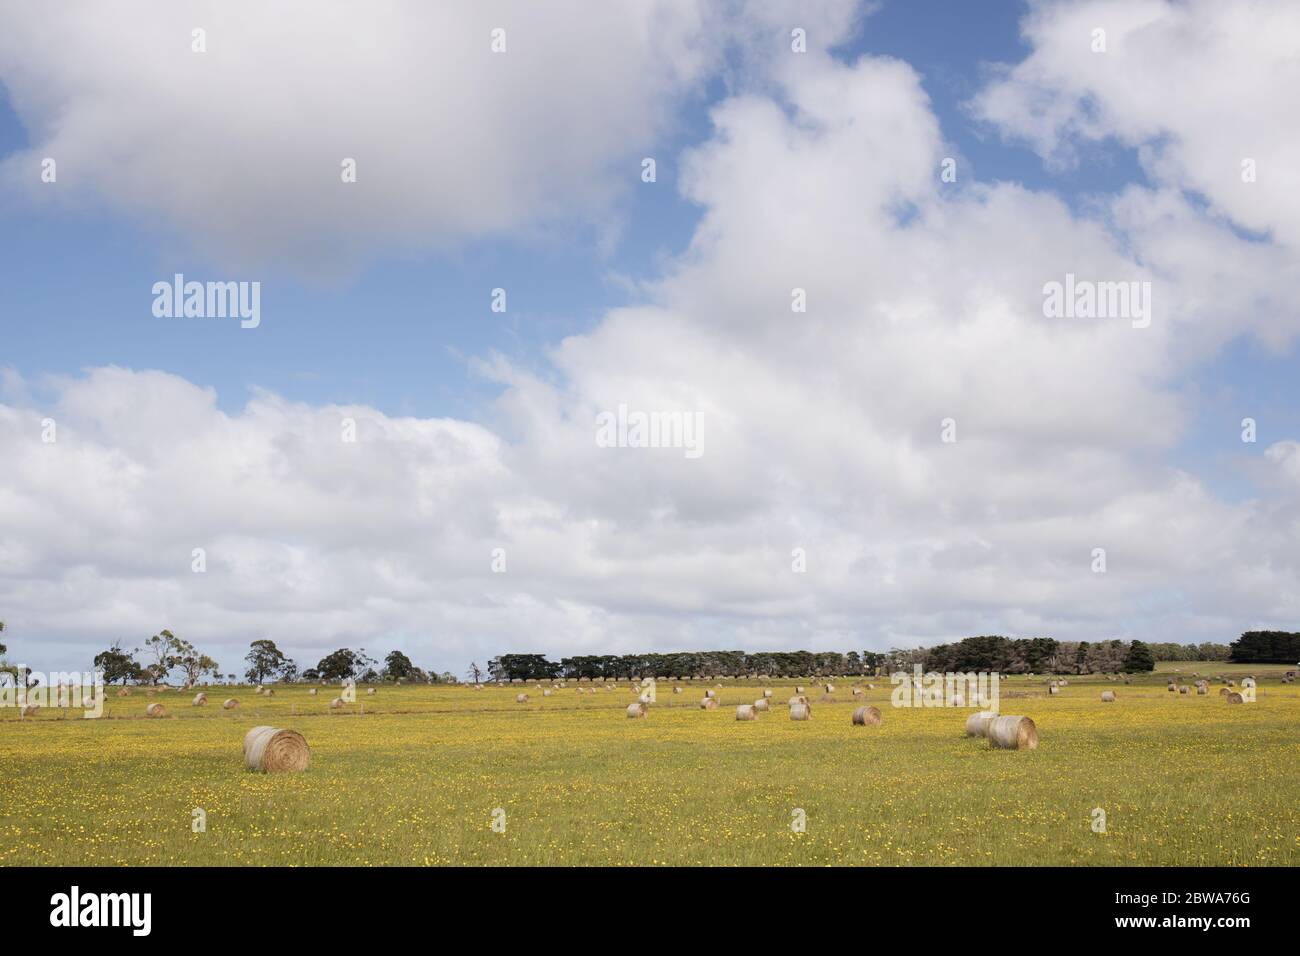 una fattoria con fiori gialli con balle di fieno rotonde, alberi in terra posteriore. Immagine scattata in Victoria Australia. Foto Stock